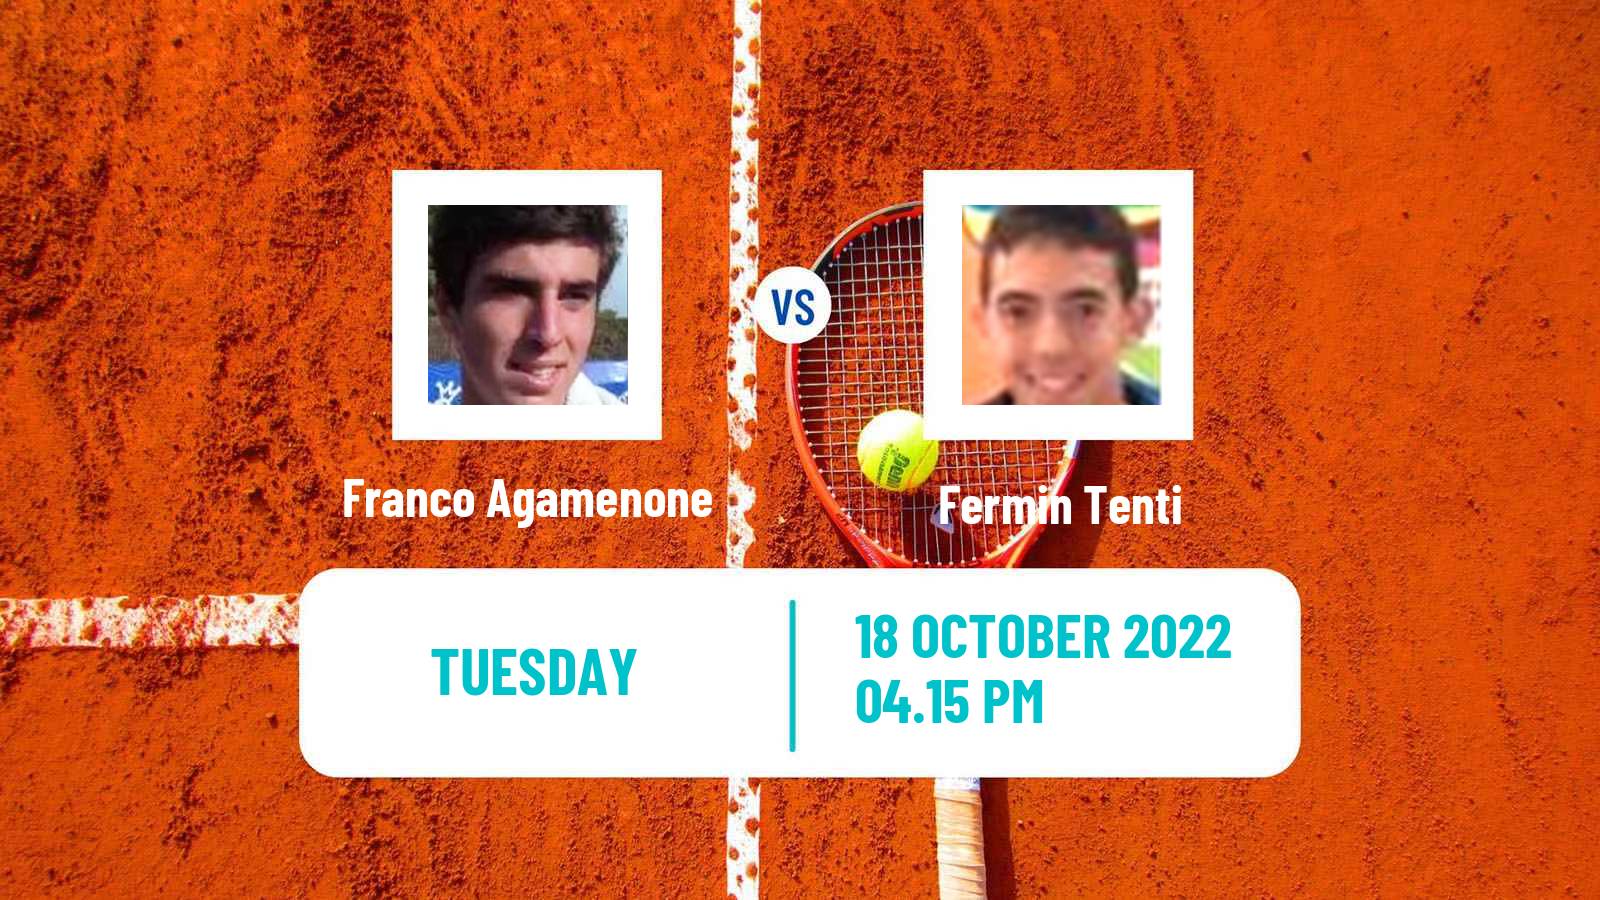 Tennis ATP Challenger Franco Agamenone - Fermin Tenti